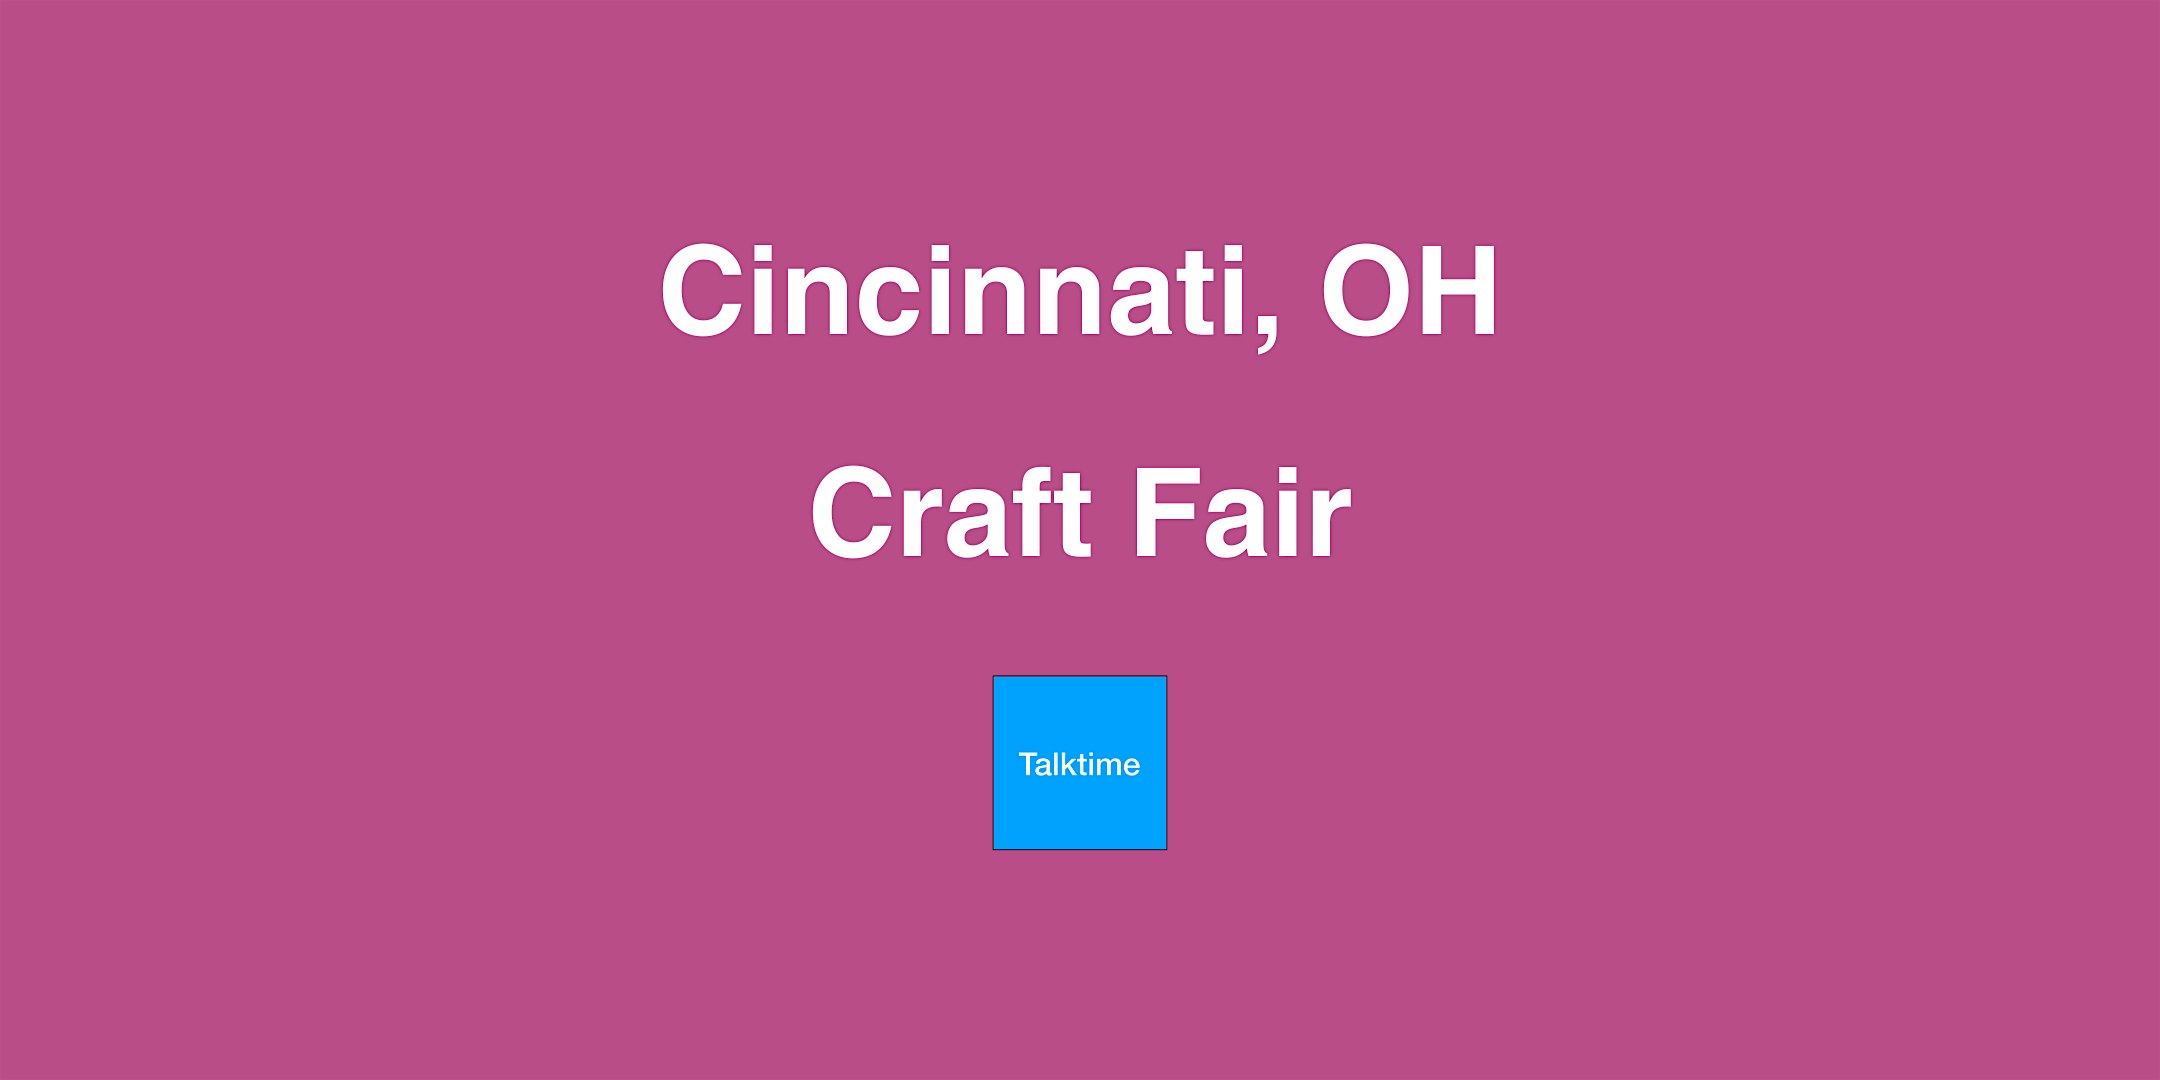 Craft Fair - Cincinnati